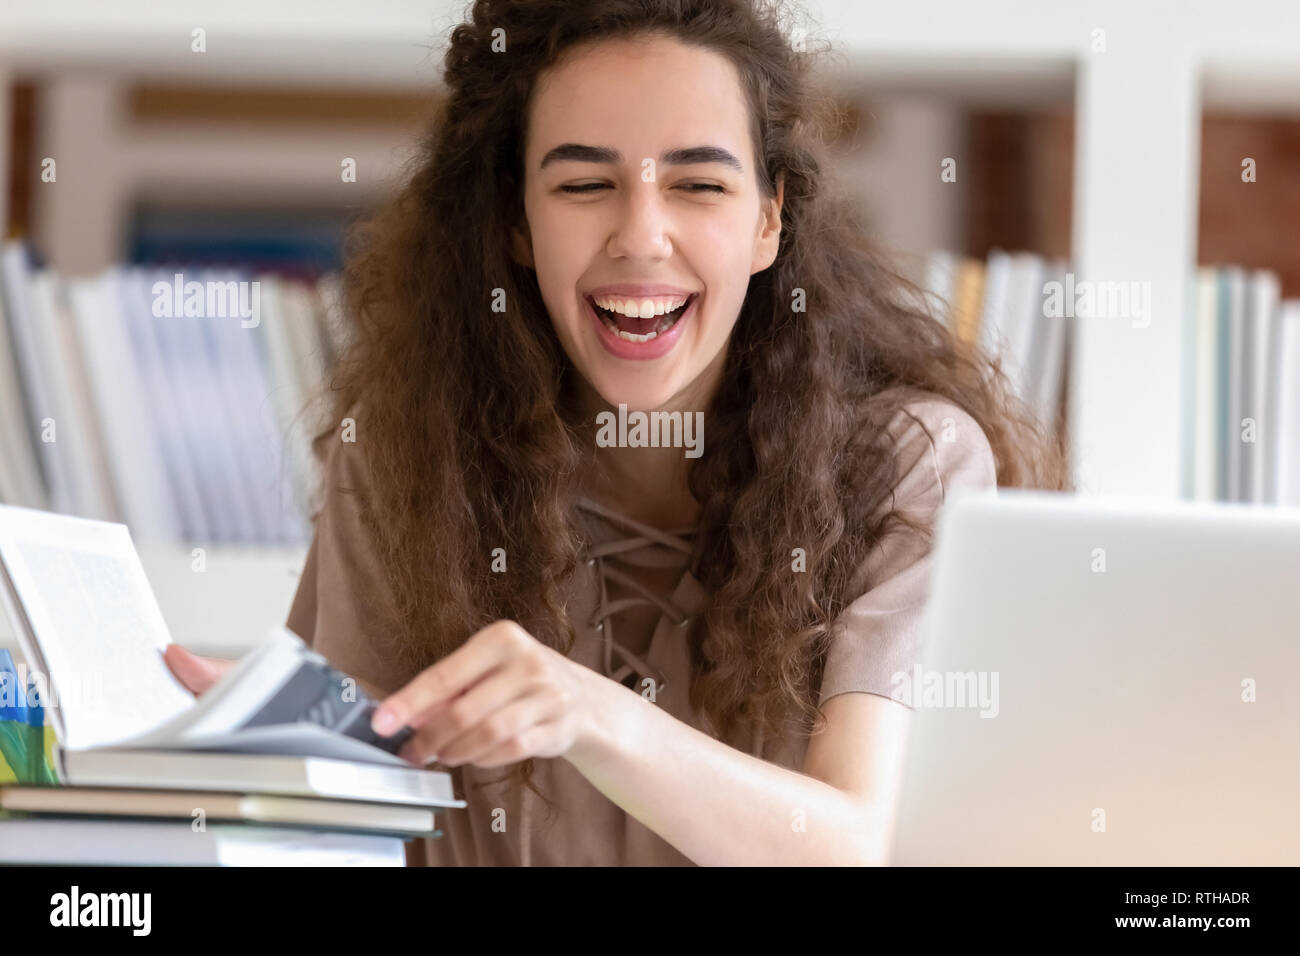 Teen girl laughing étudiant pendant ses études avec des livres et d'ordinateurs portables Banque D'Images